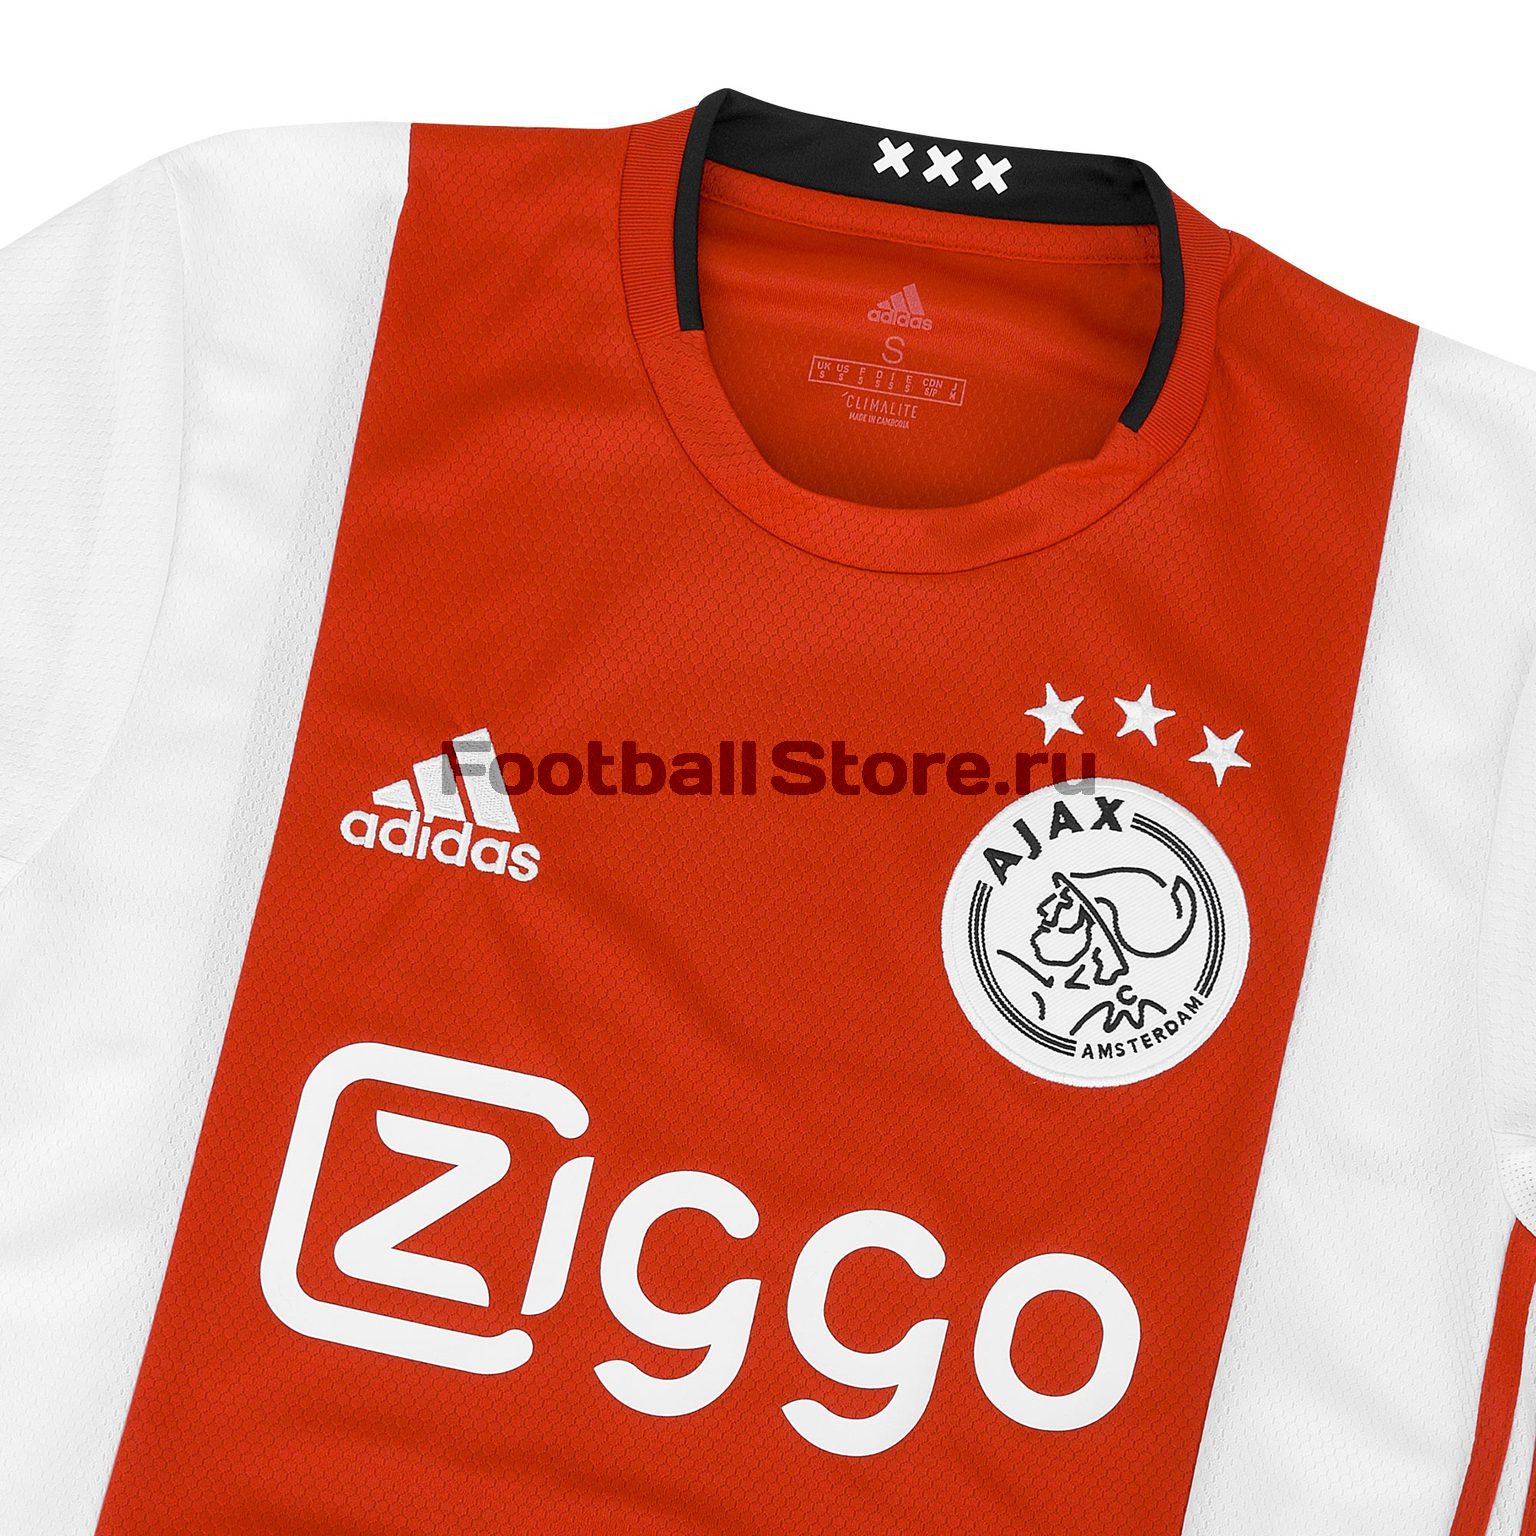 Футболка домашняя игровая Adidas Ajax 2019/20